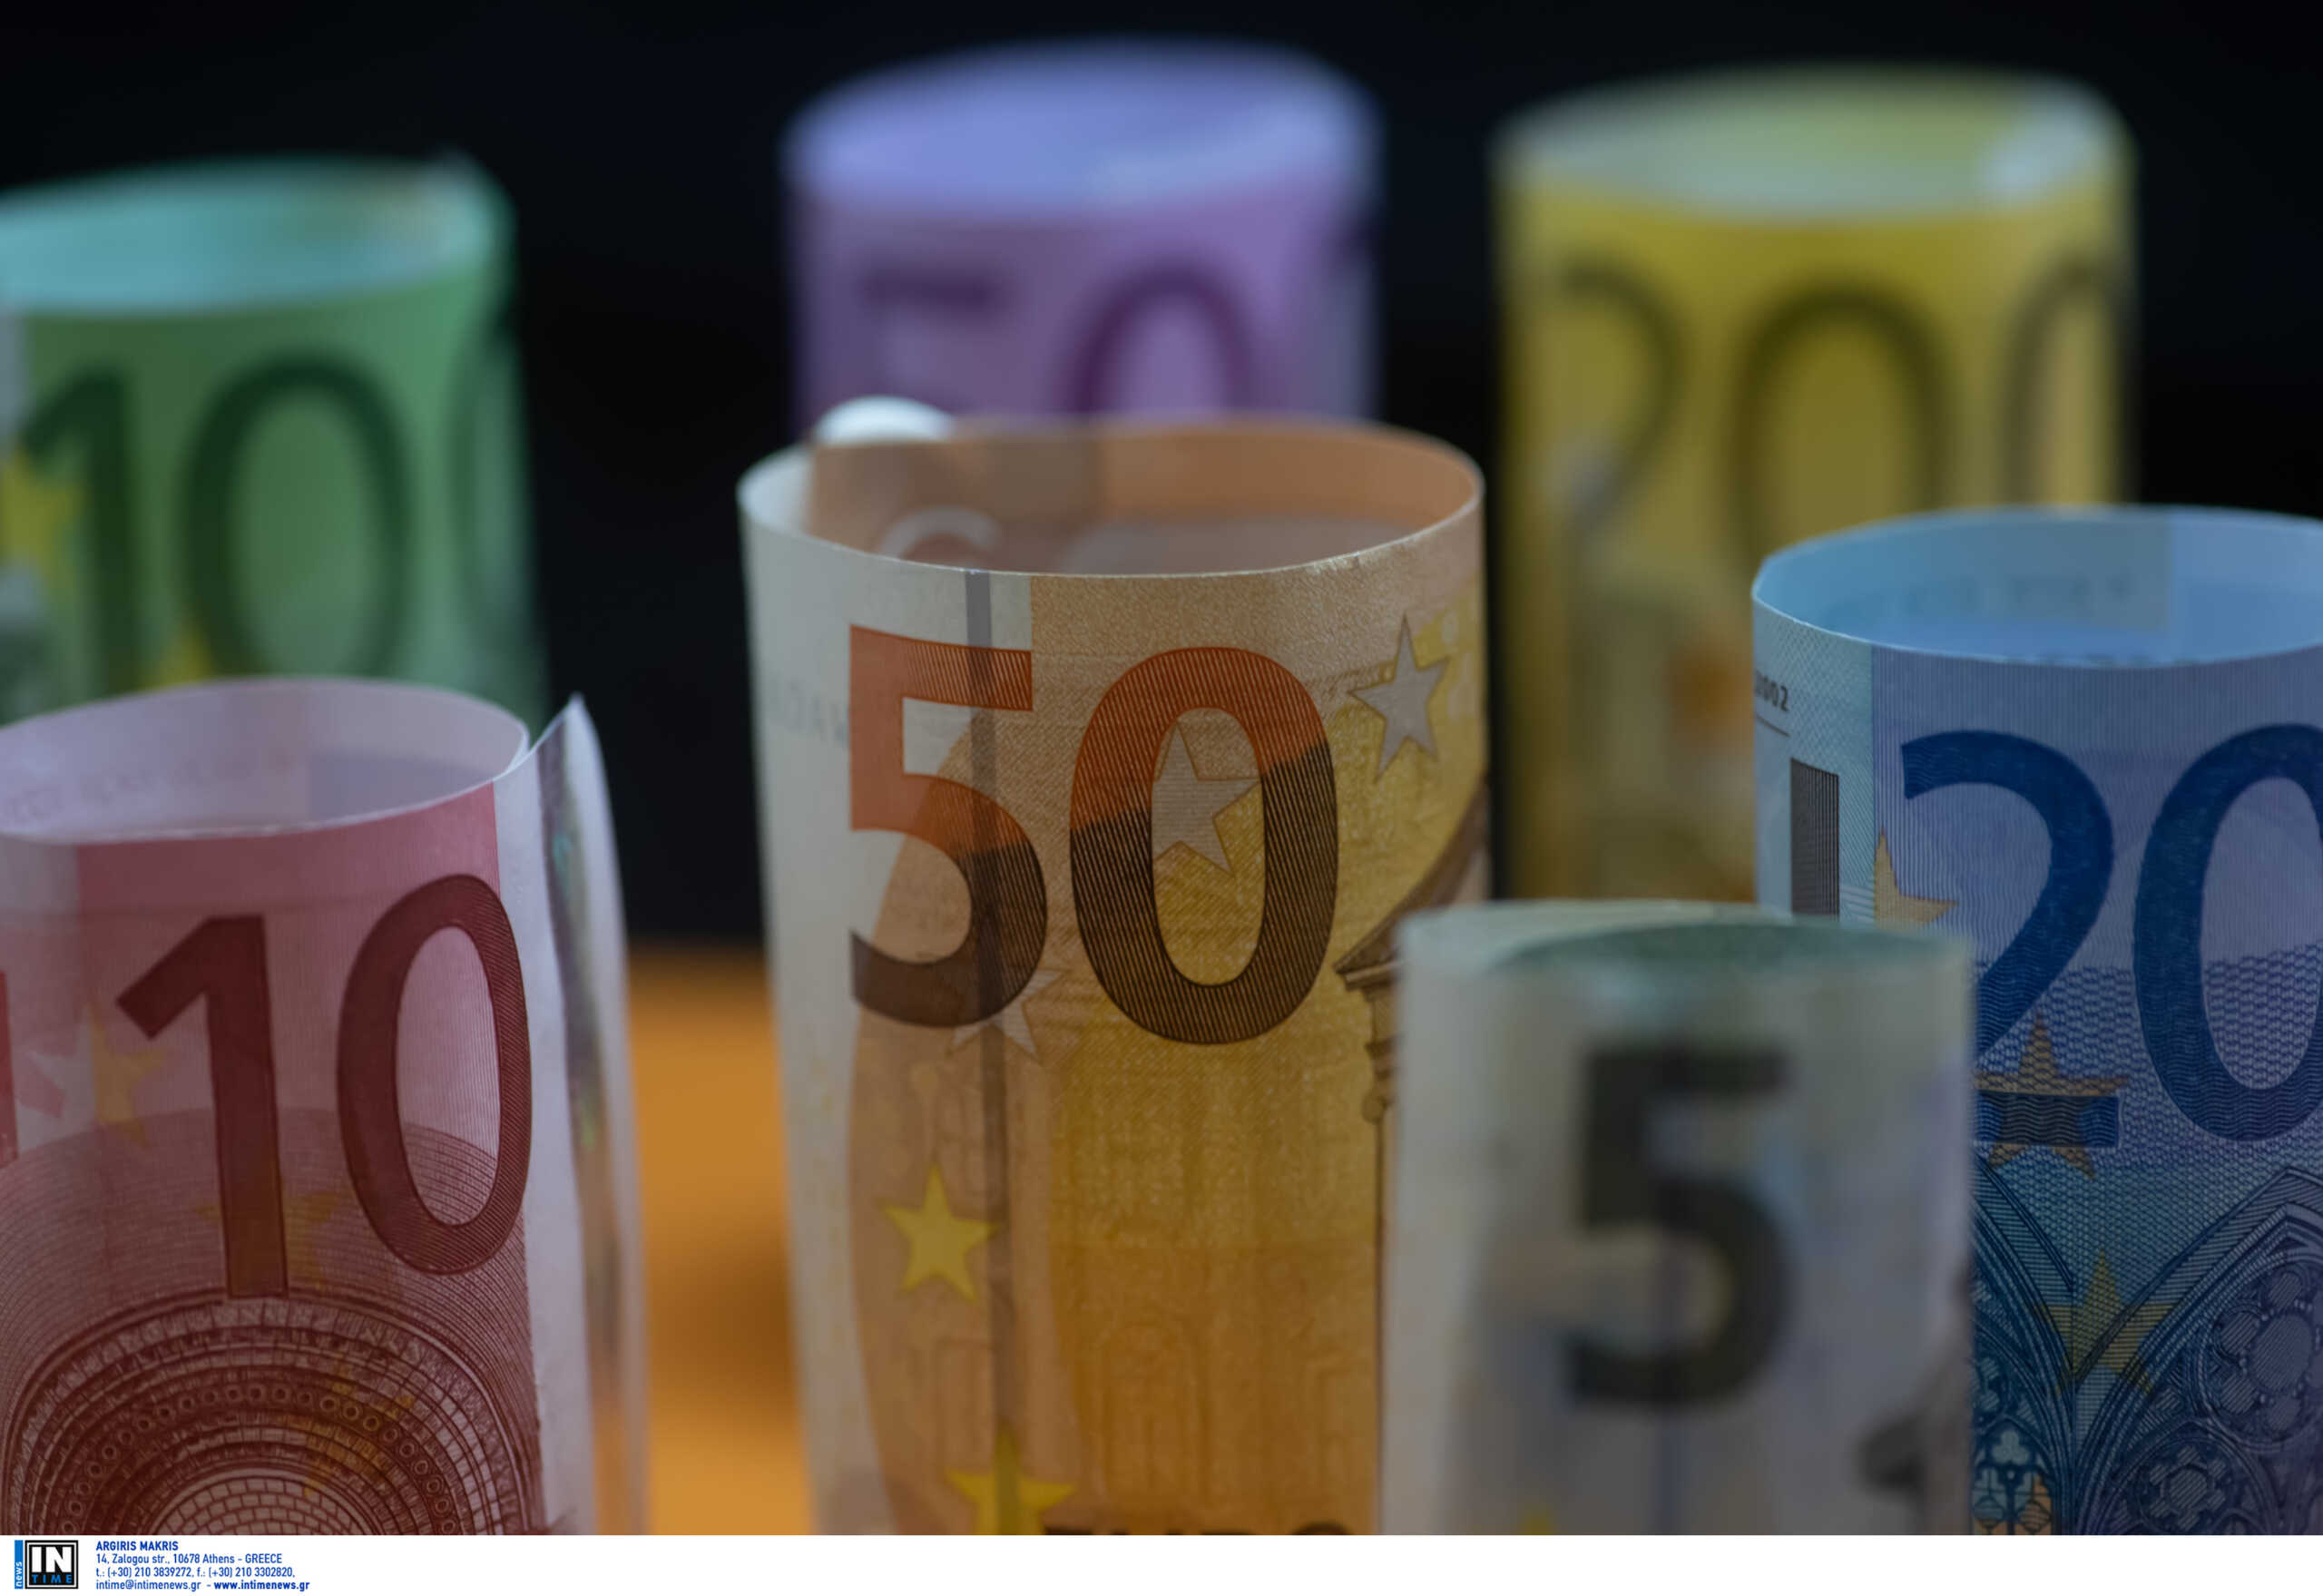 Νέα δημοπρασία ομολόγων 500 εκατομμυρίων ευρώ τη Δευτέρα